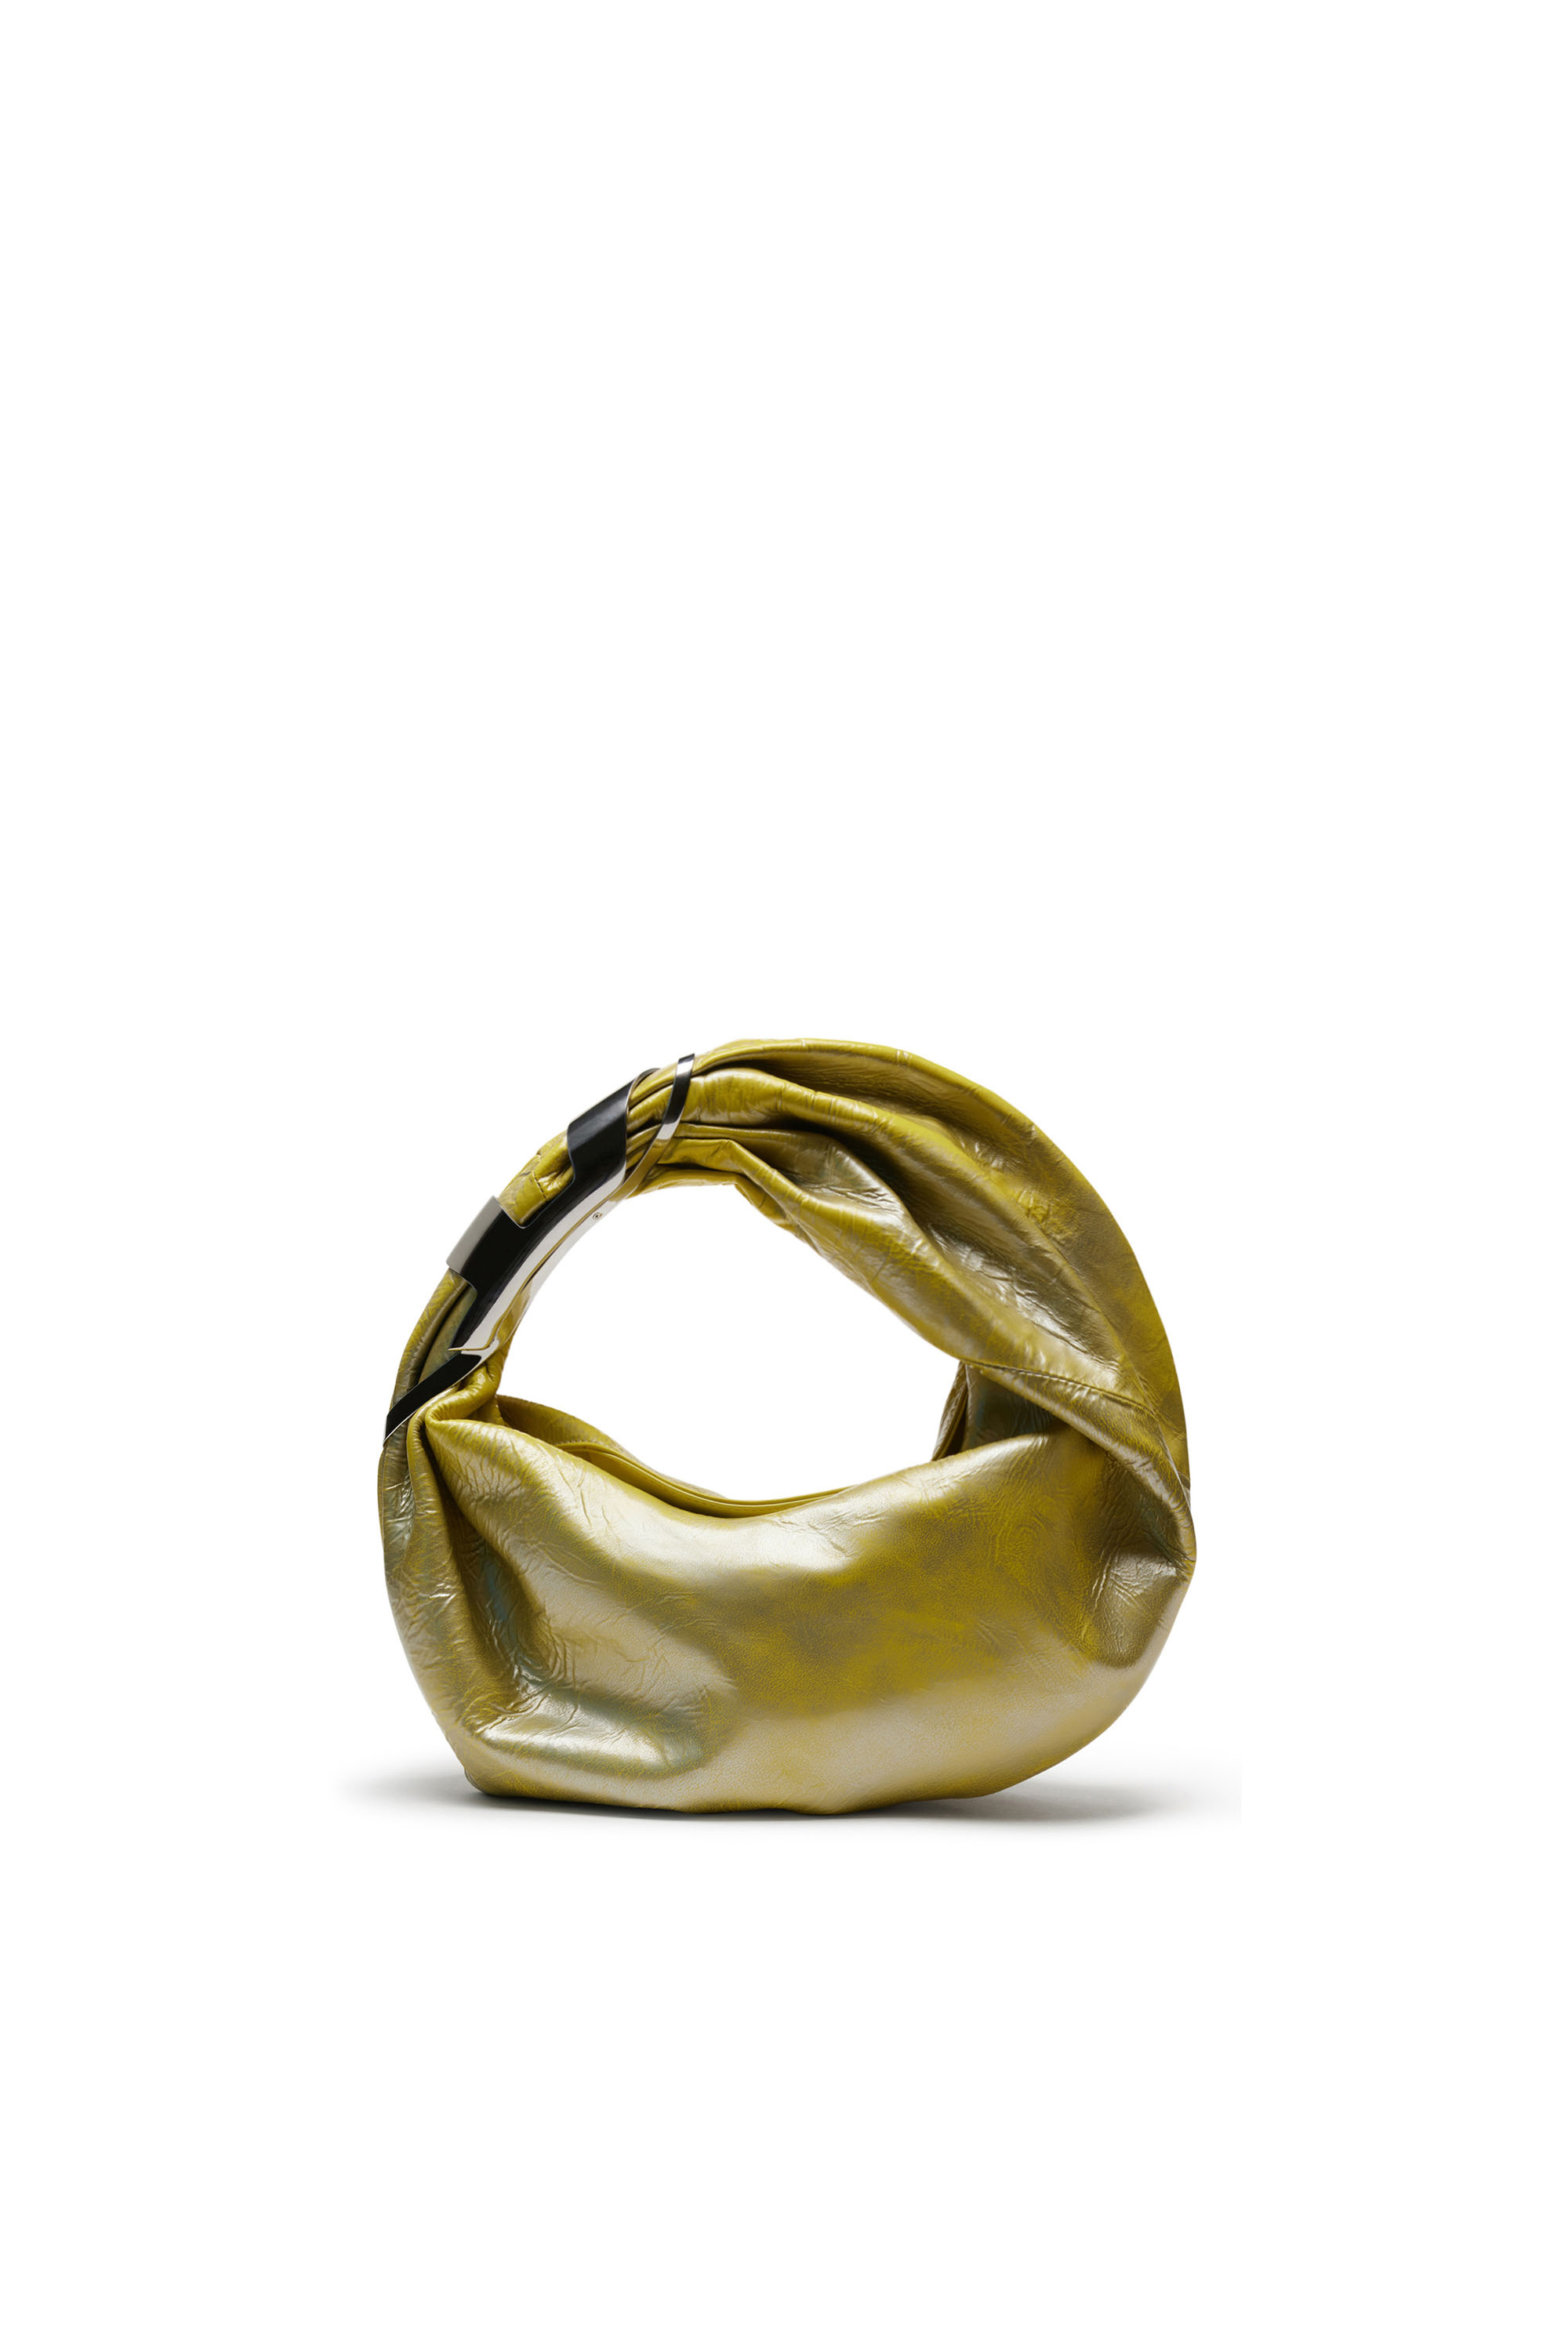 Diesel - GRAB-D HOBO S, Female Grab-D S-Hobo bag in metallic leather in イエロー - Image 2